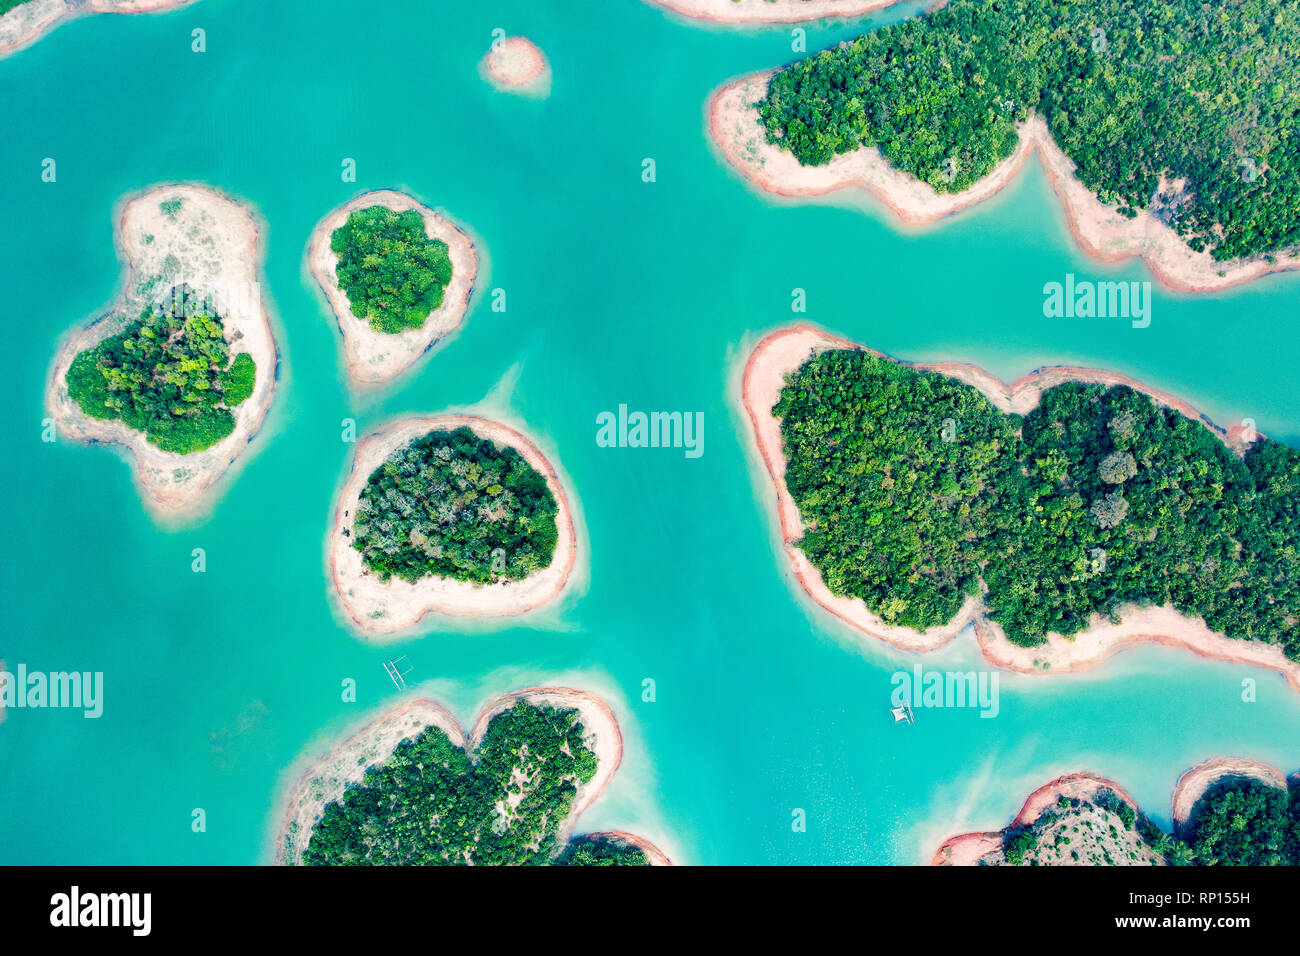 (Vista desde arriba) impresionante vista aérea de un bonito grupo de isla en el Embalse de Nam Ngum Thalat situado en el norte de Laos. Foto de stock